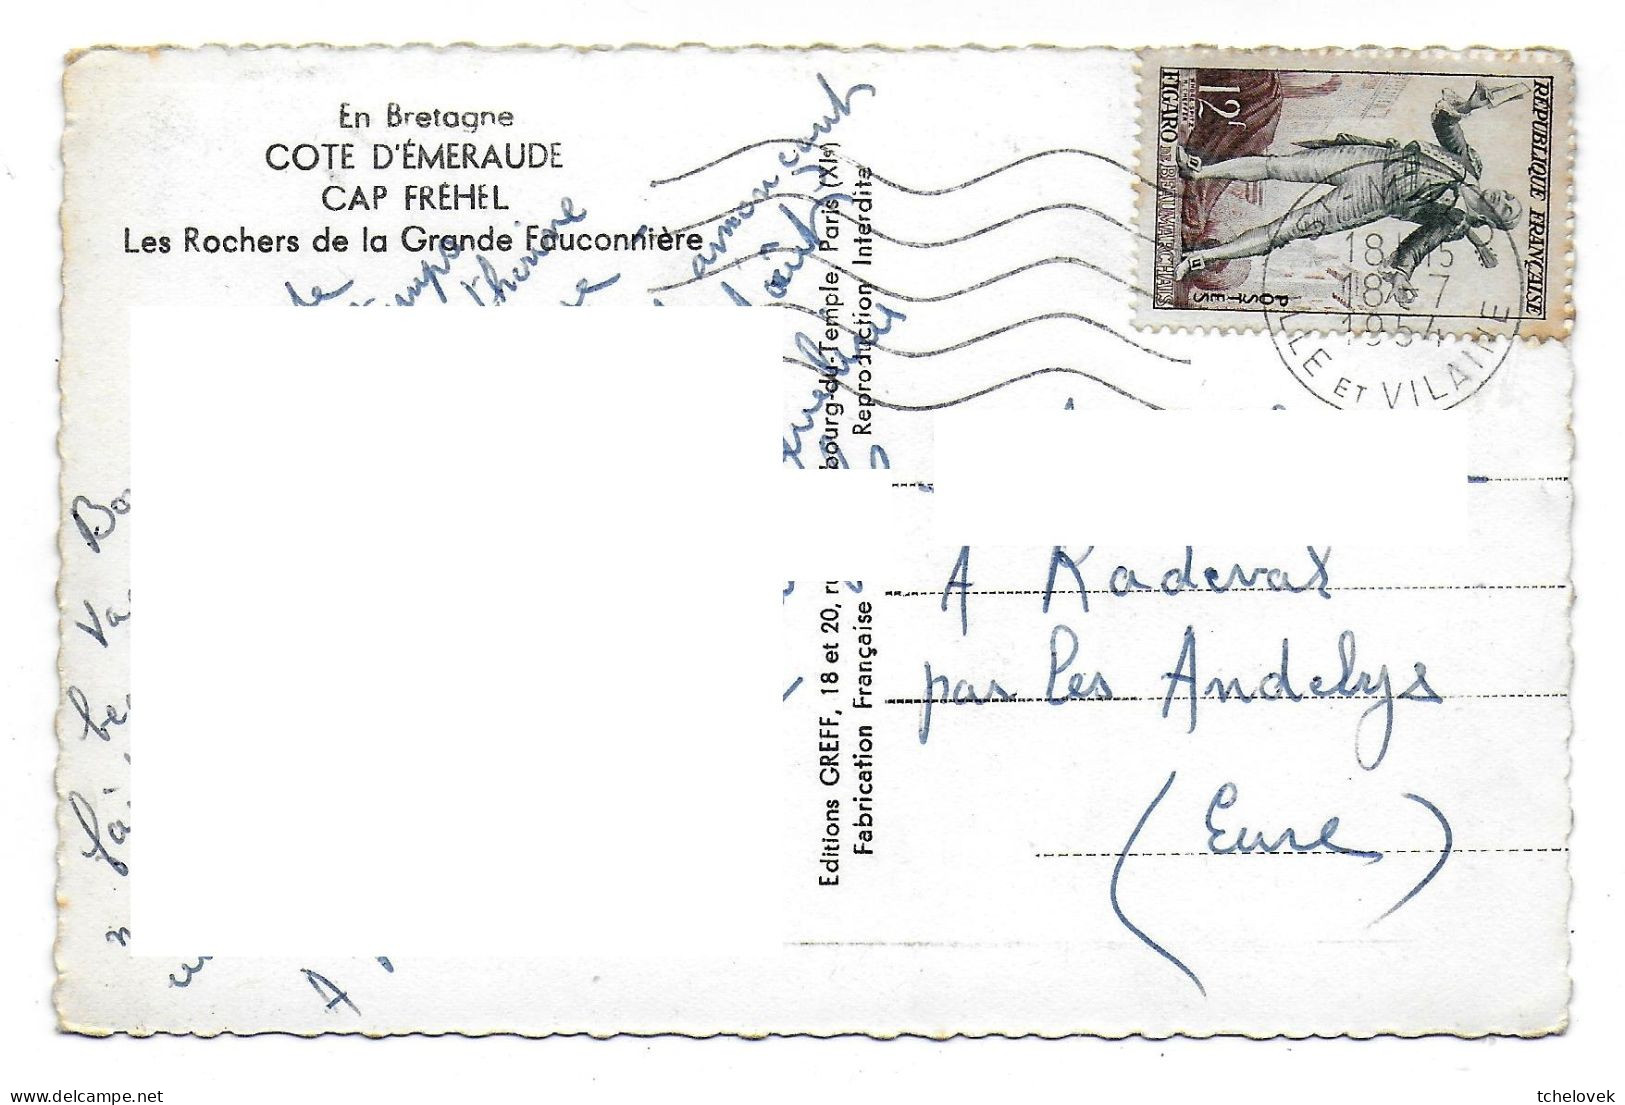 (22). Le Cap Frehel. (11) V114 Fort La Latte 1967 & (12) 534 Grande Fauconnière 1954 & (13) 1958 - Cap Frehel